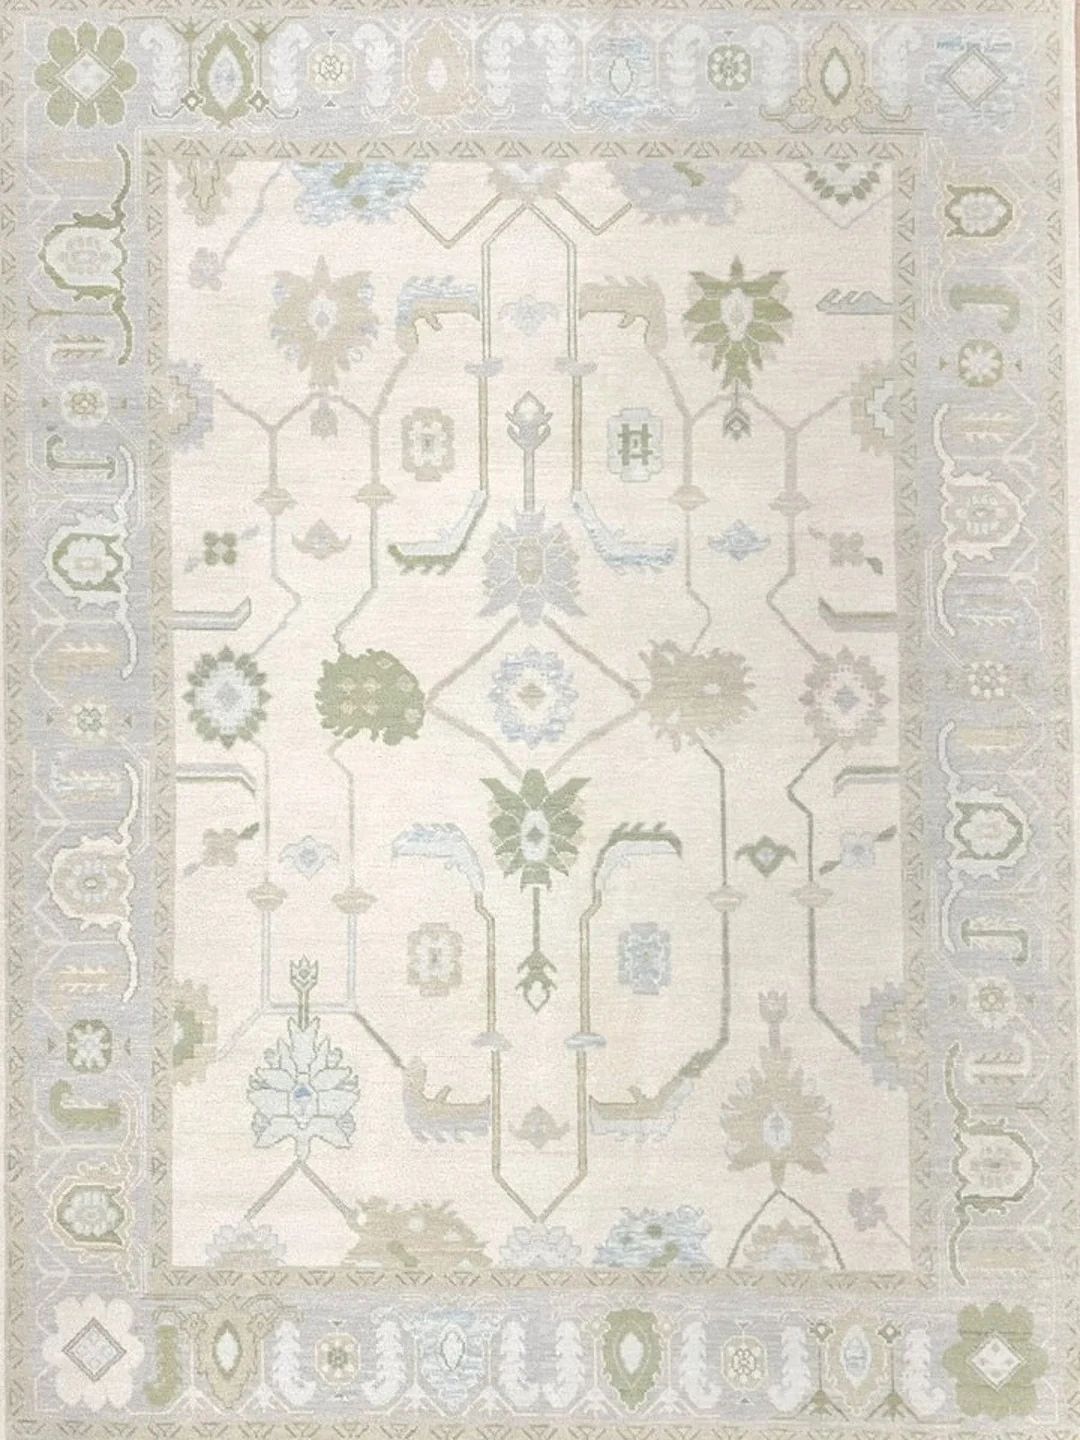 9x12 sage pastel rug Modern Oushak rug fast delivery | Etsy (US)